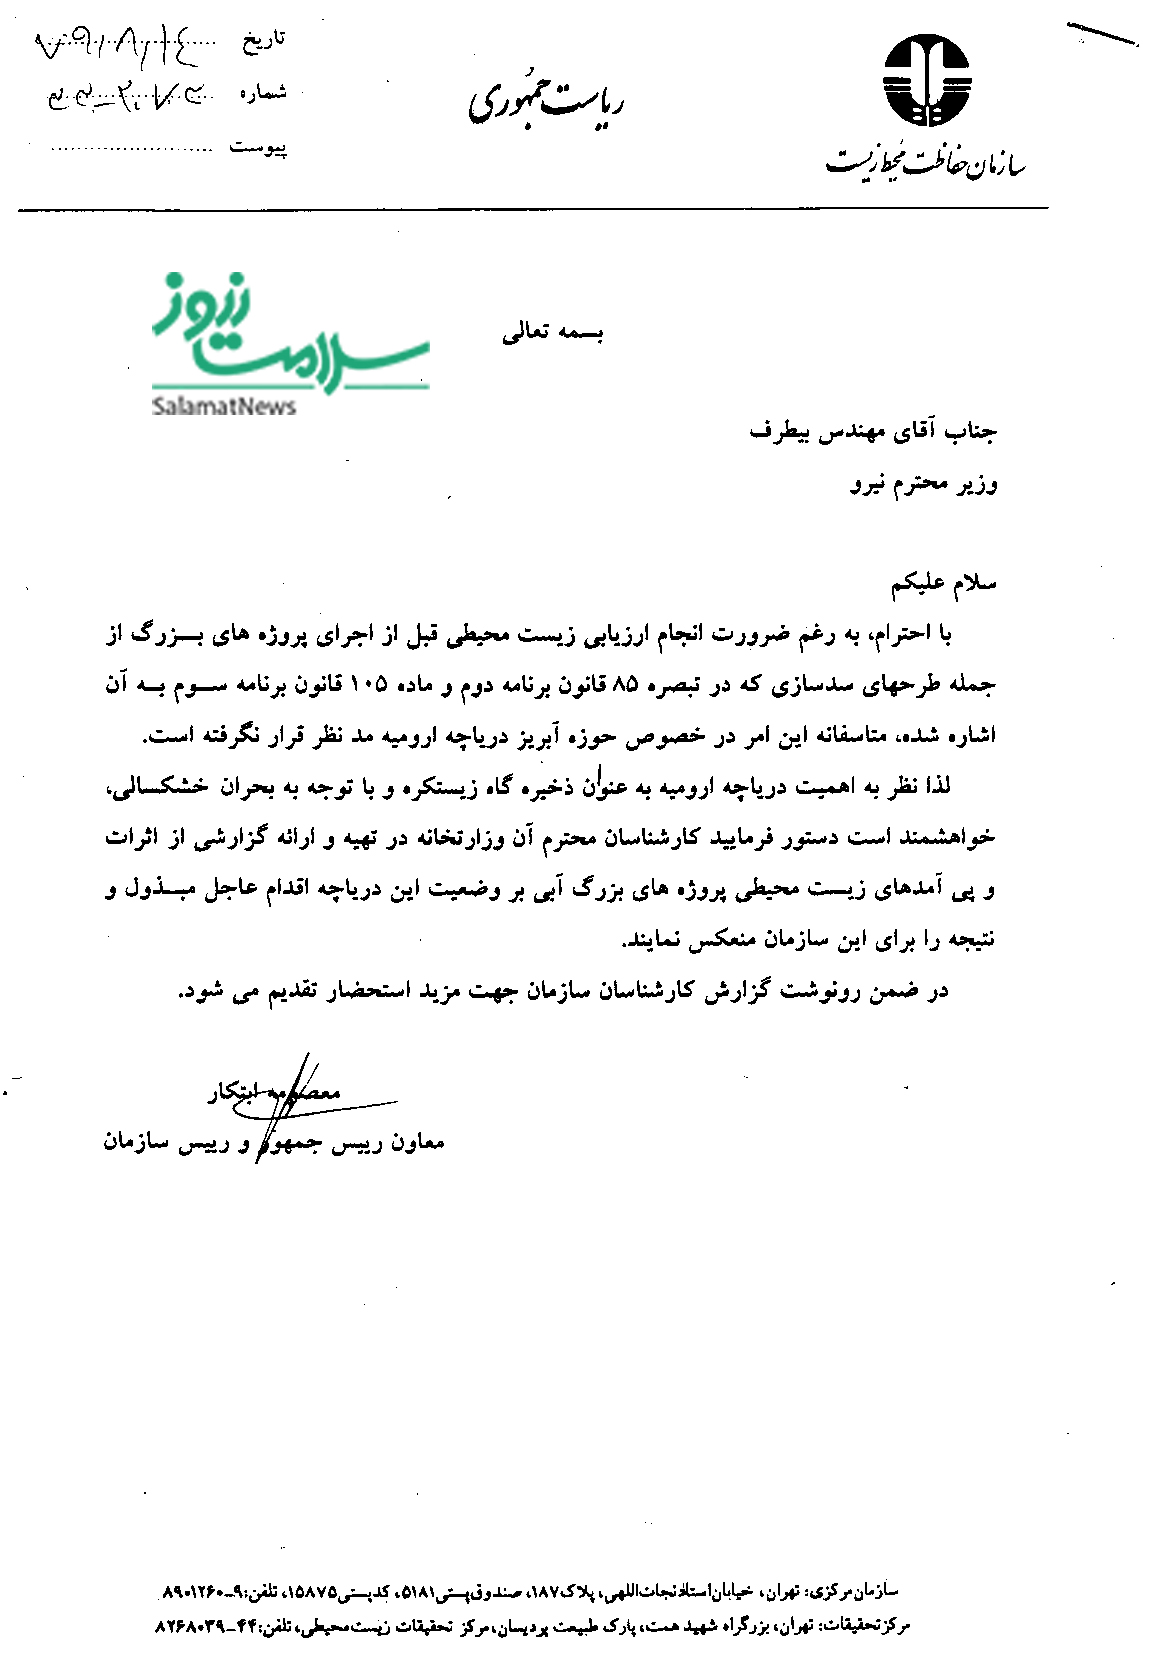 نامه ابتکار به وزیر نیرو براری جلوگیری از خشک شدن دریاچه ارومیه